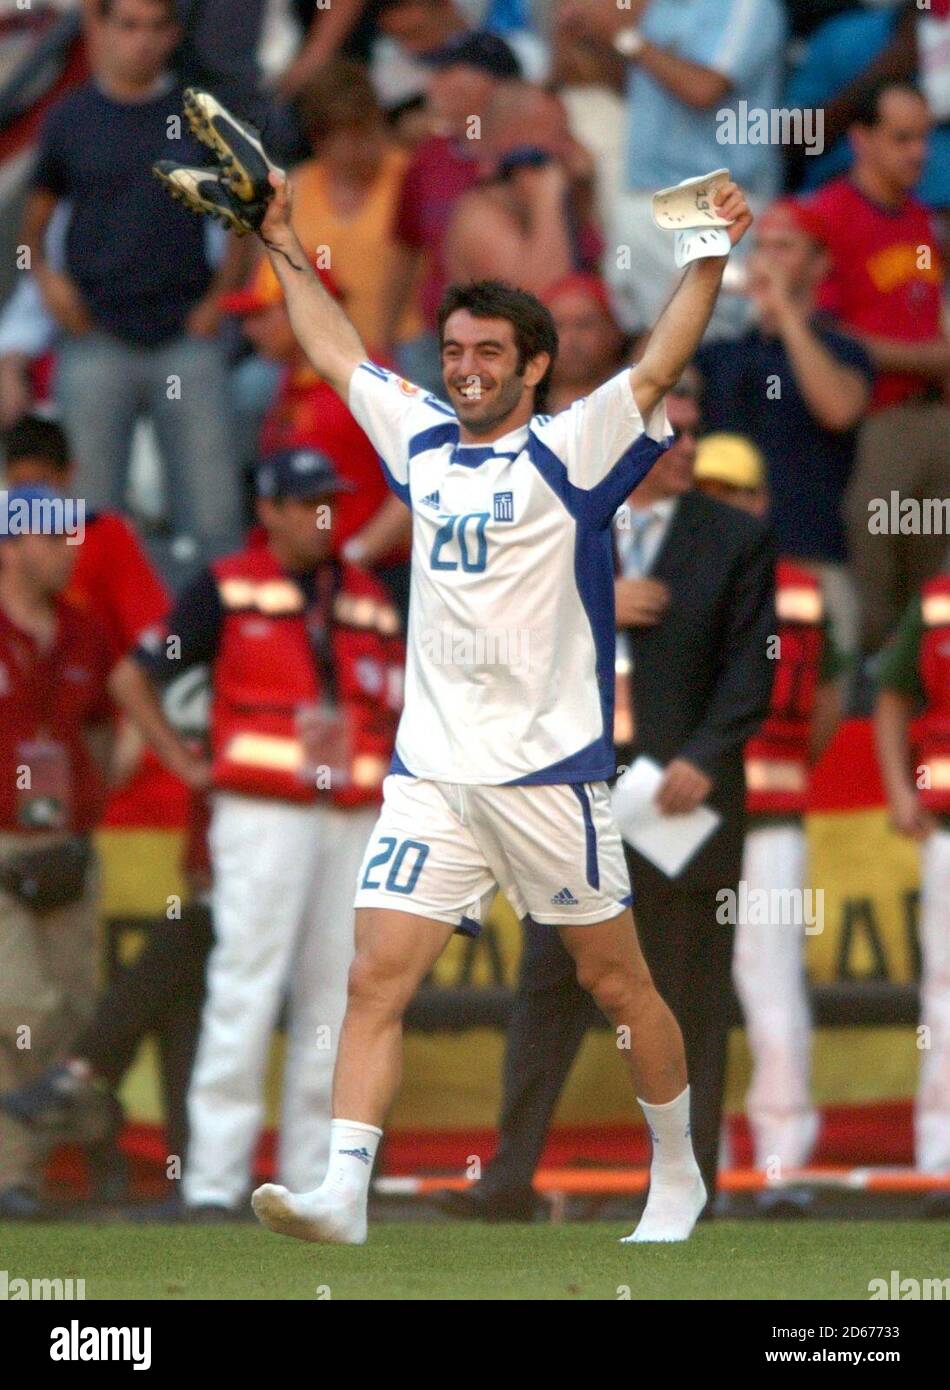 Greece's Georgios Karagounis celebrates at the end of the game Stock Photo